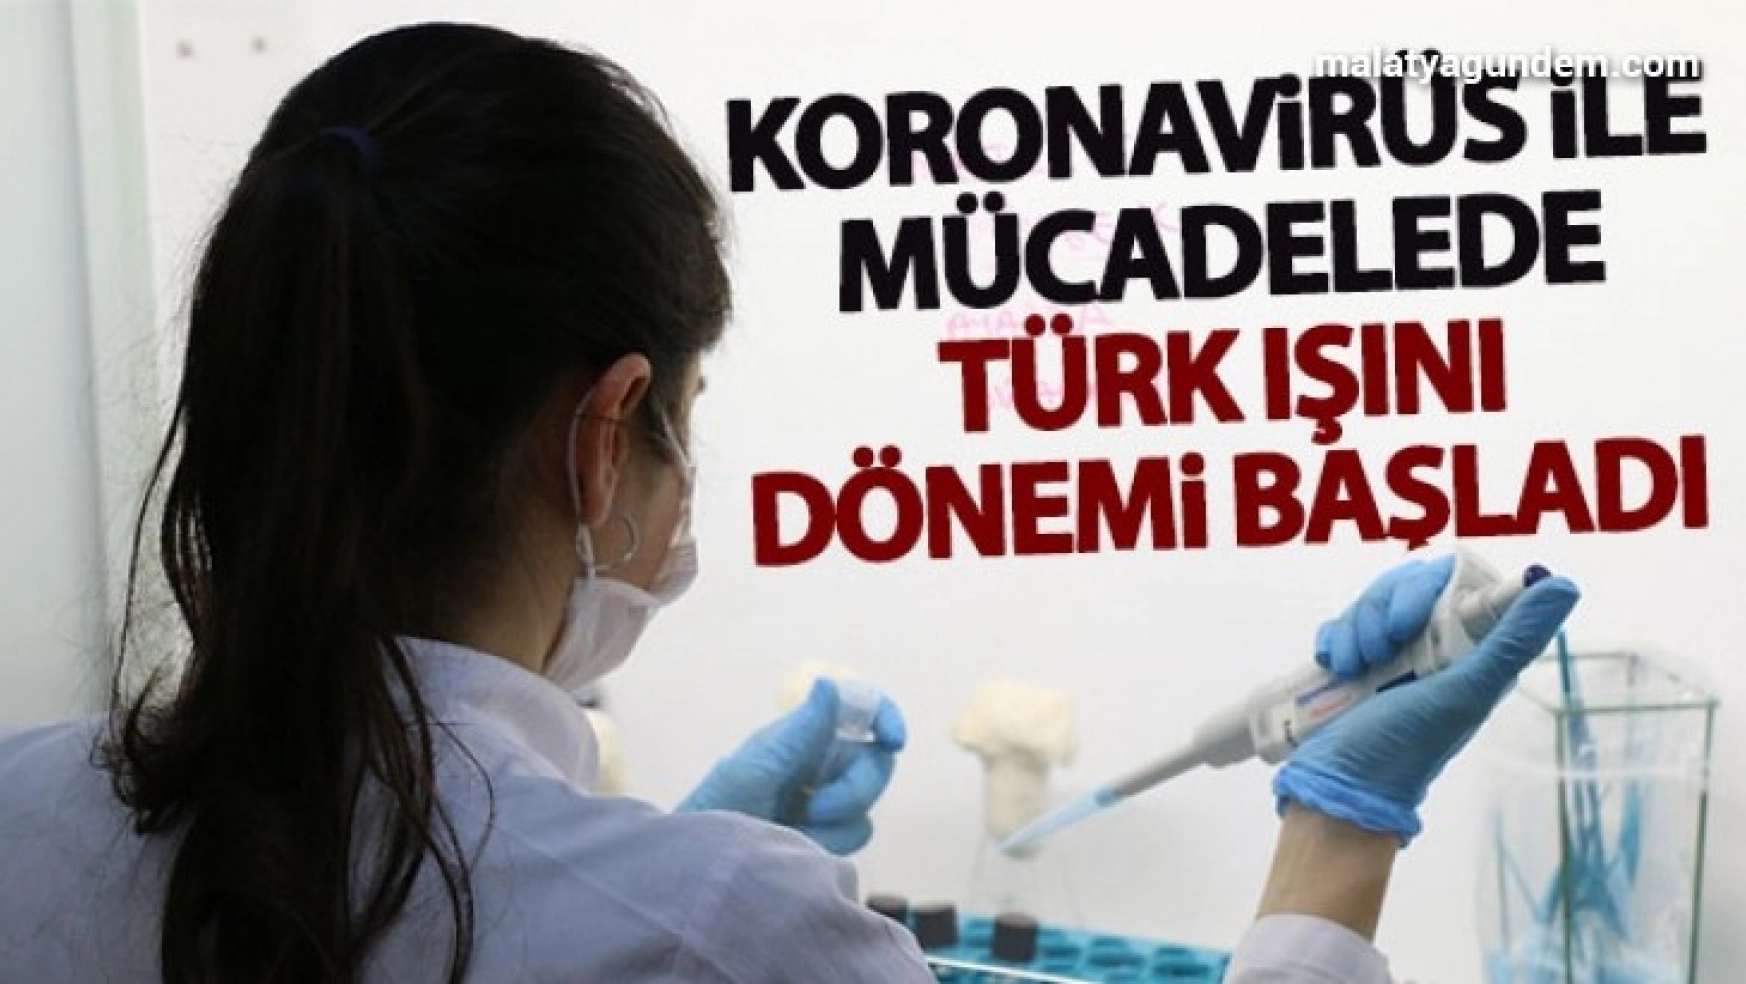 Korona virüs ile mücadelede Türk ışını dönemi resmen başladı